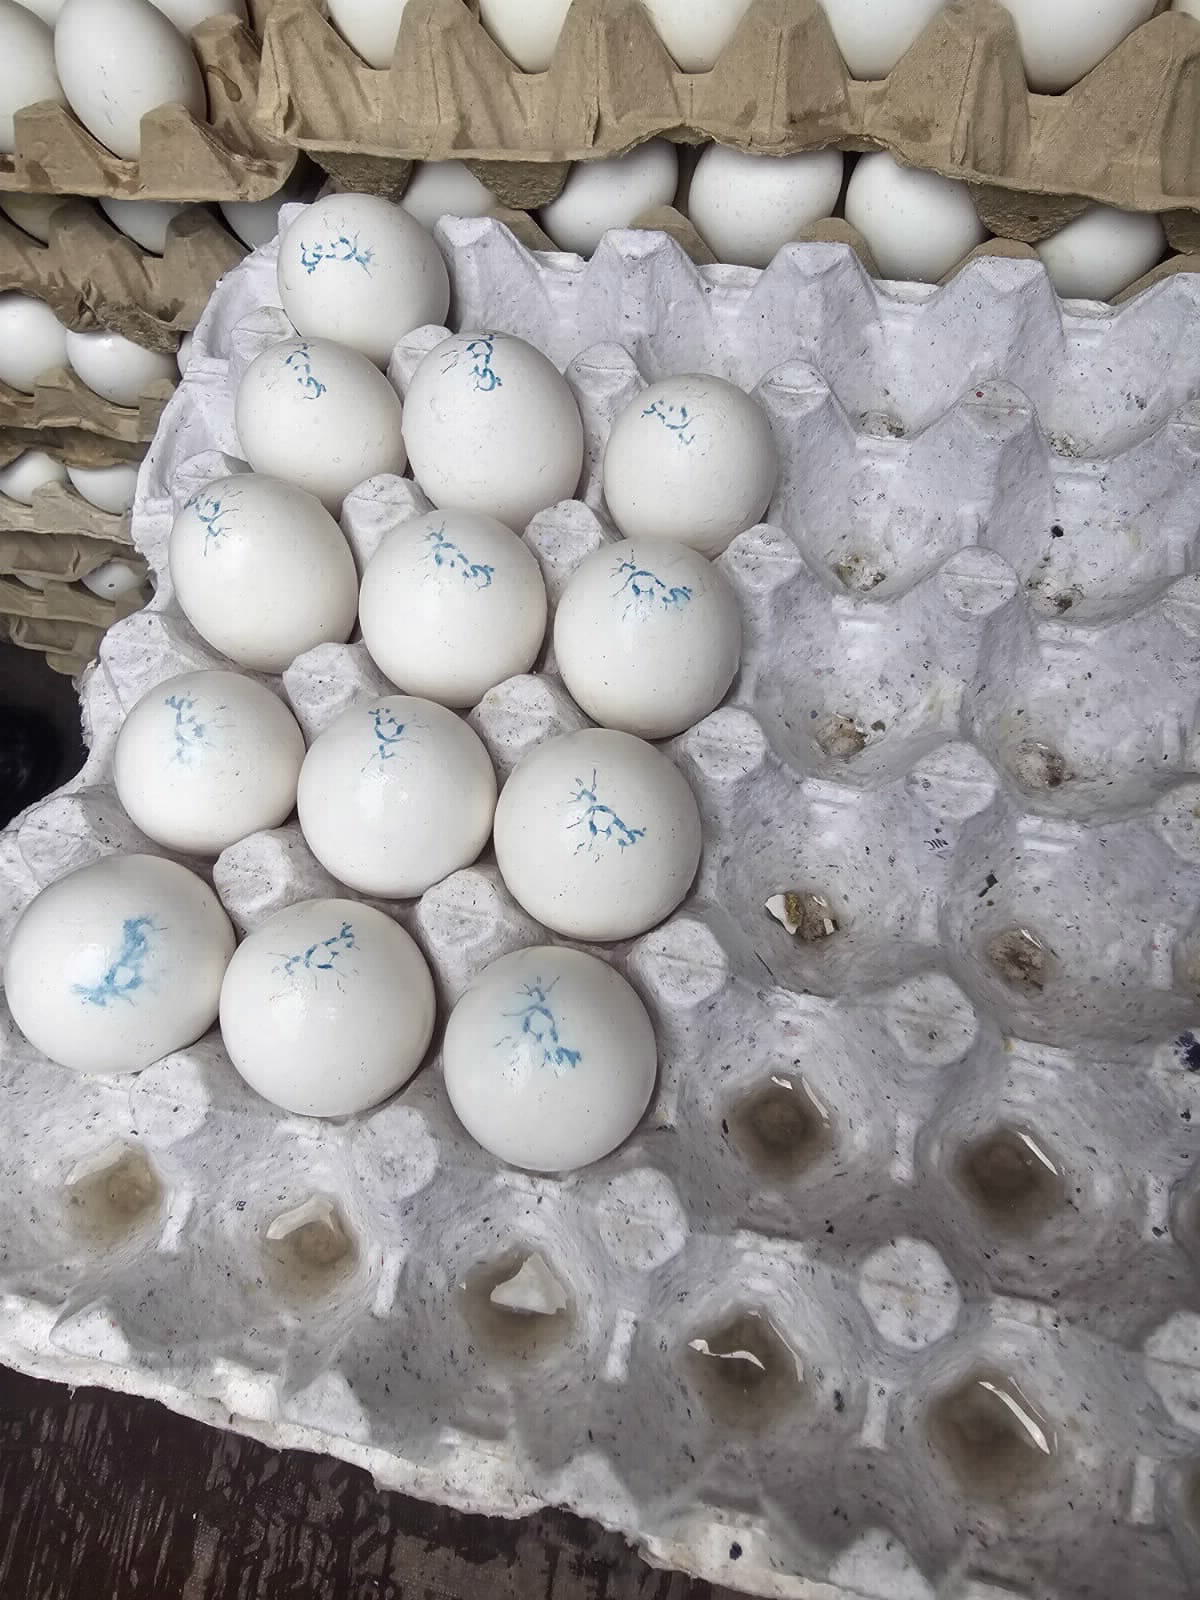 הביצים שנתפסו (צילום: משרד החקלאות)